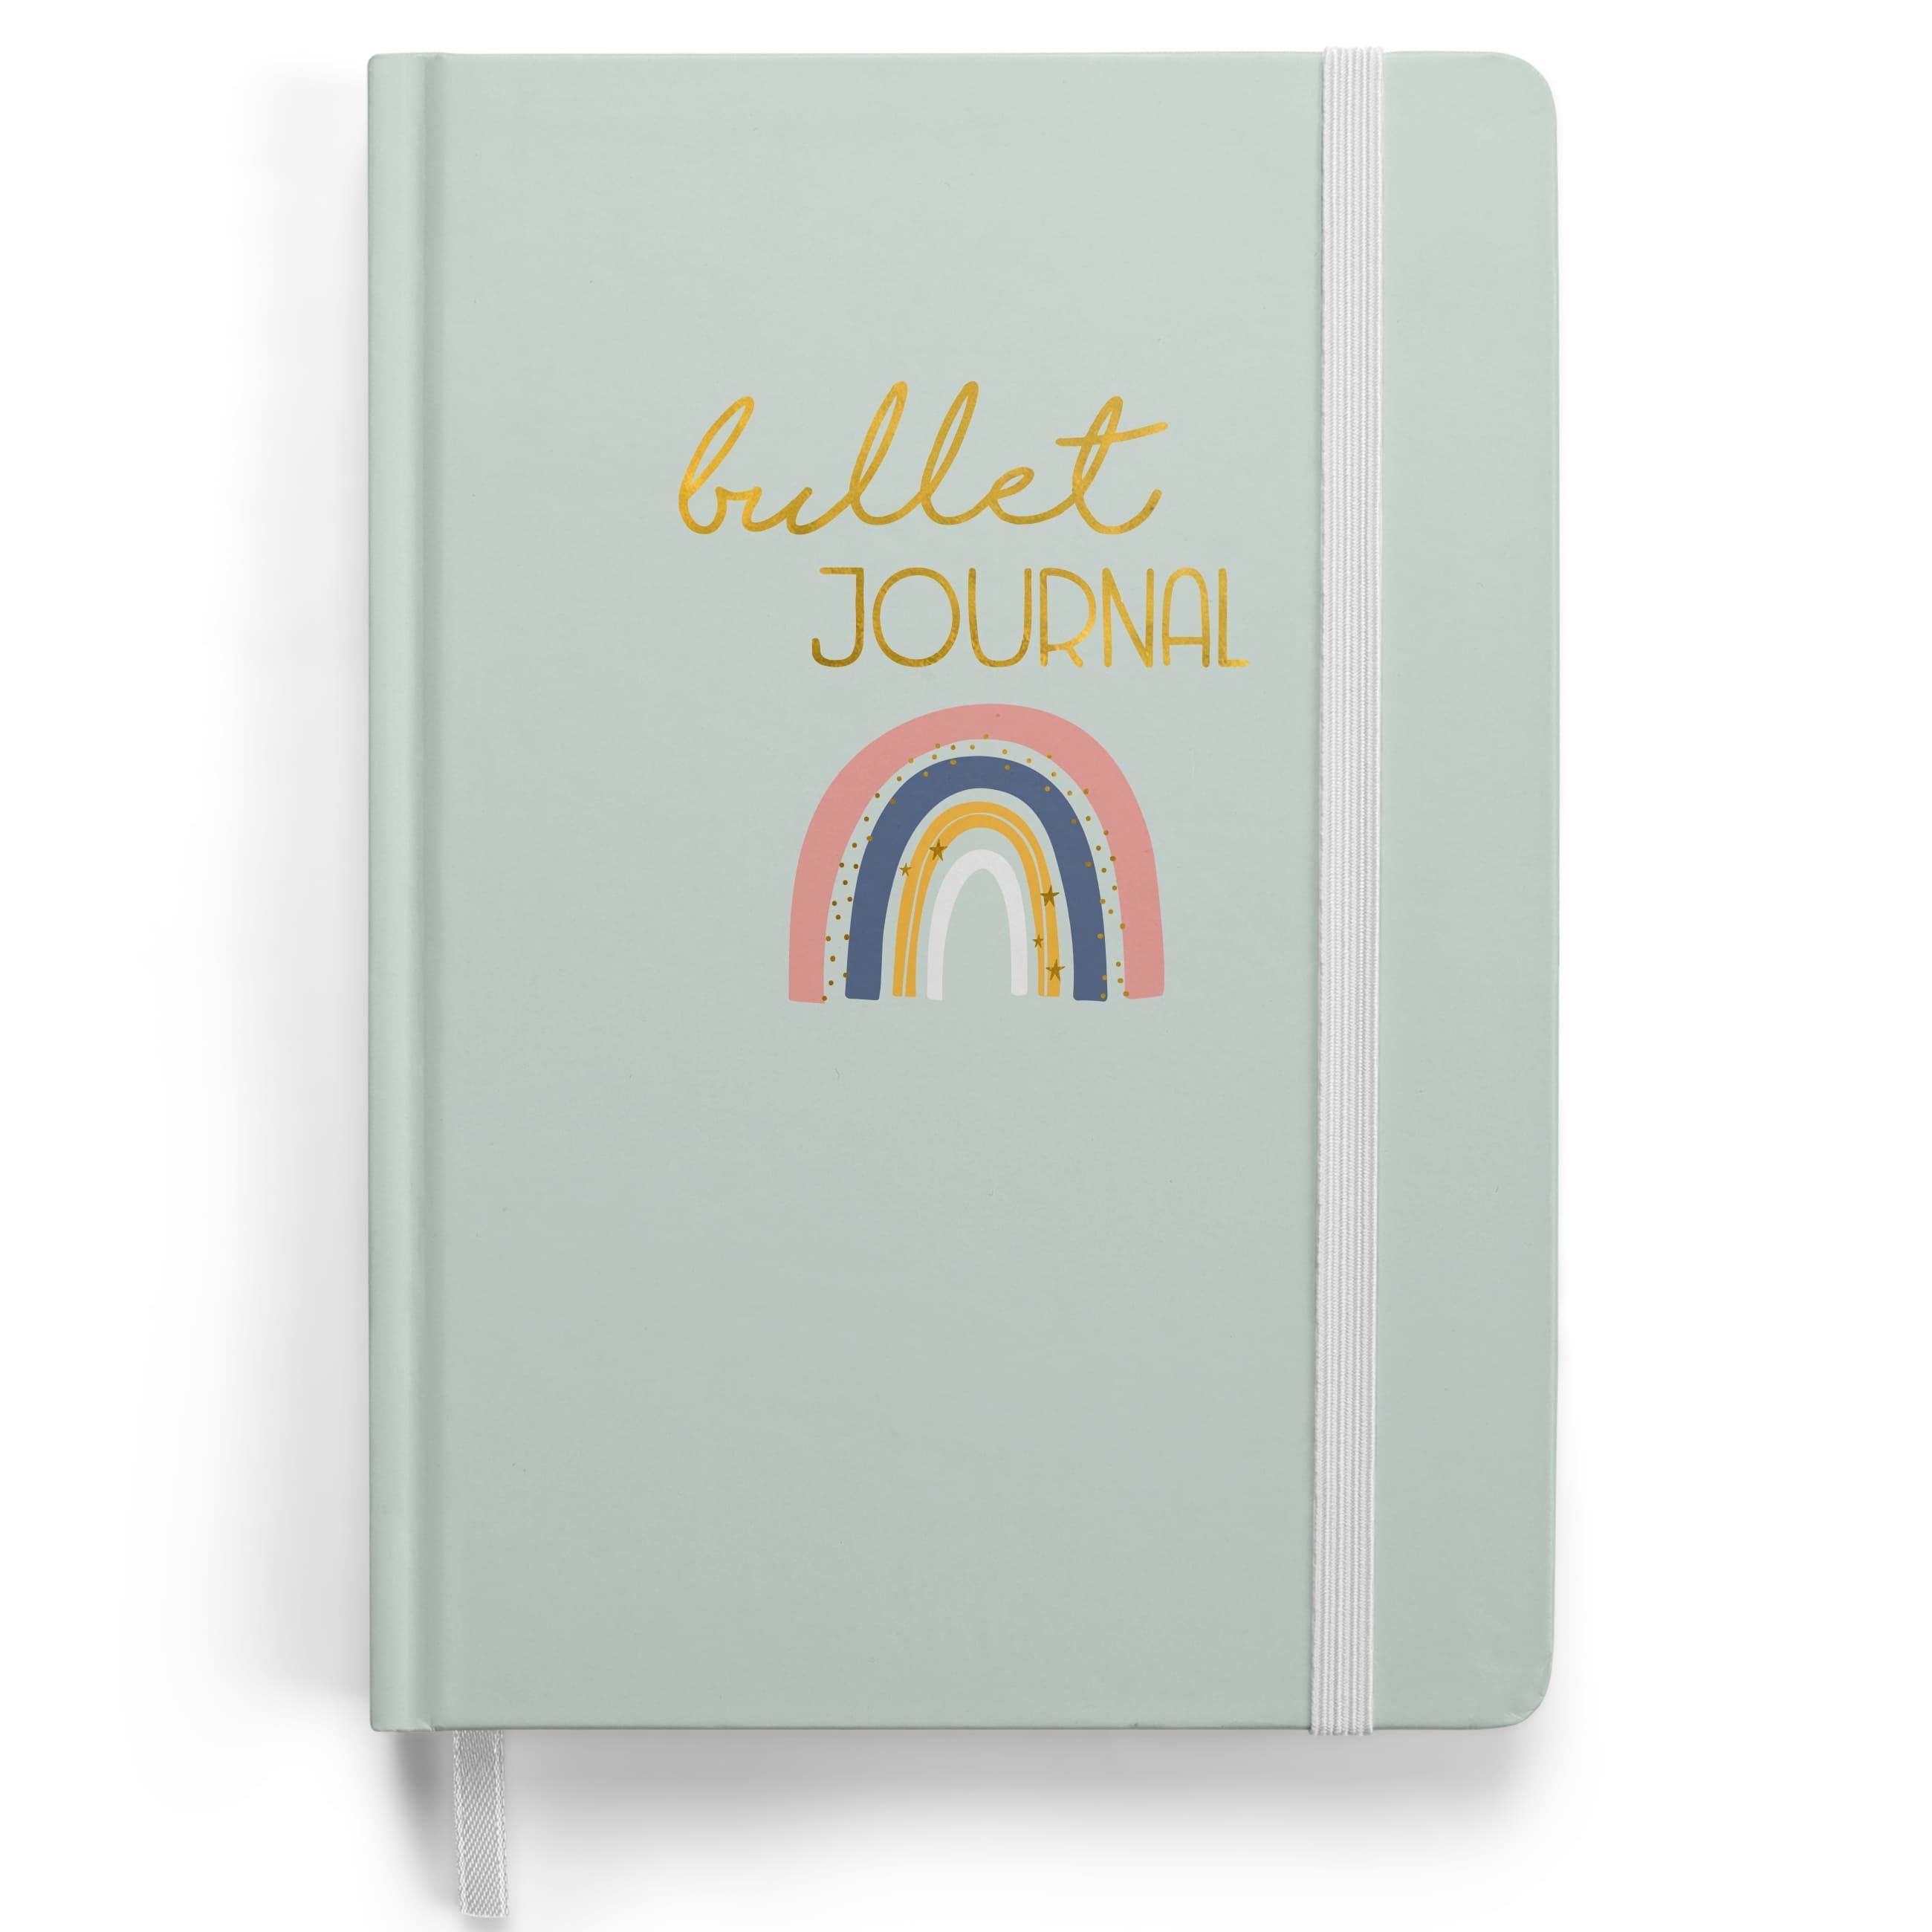 PAPIERDRACHEN Notizbuch A5 Bullet Journal - Regenbogen mit Punkteraster Notizbuch gepunktet